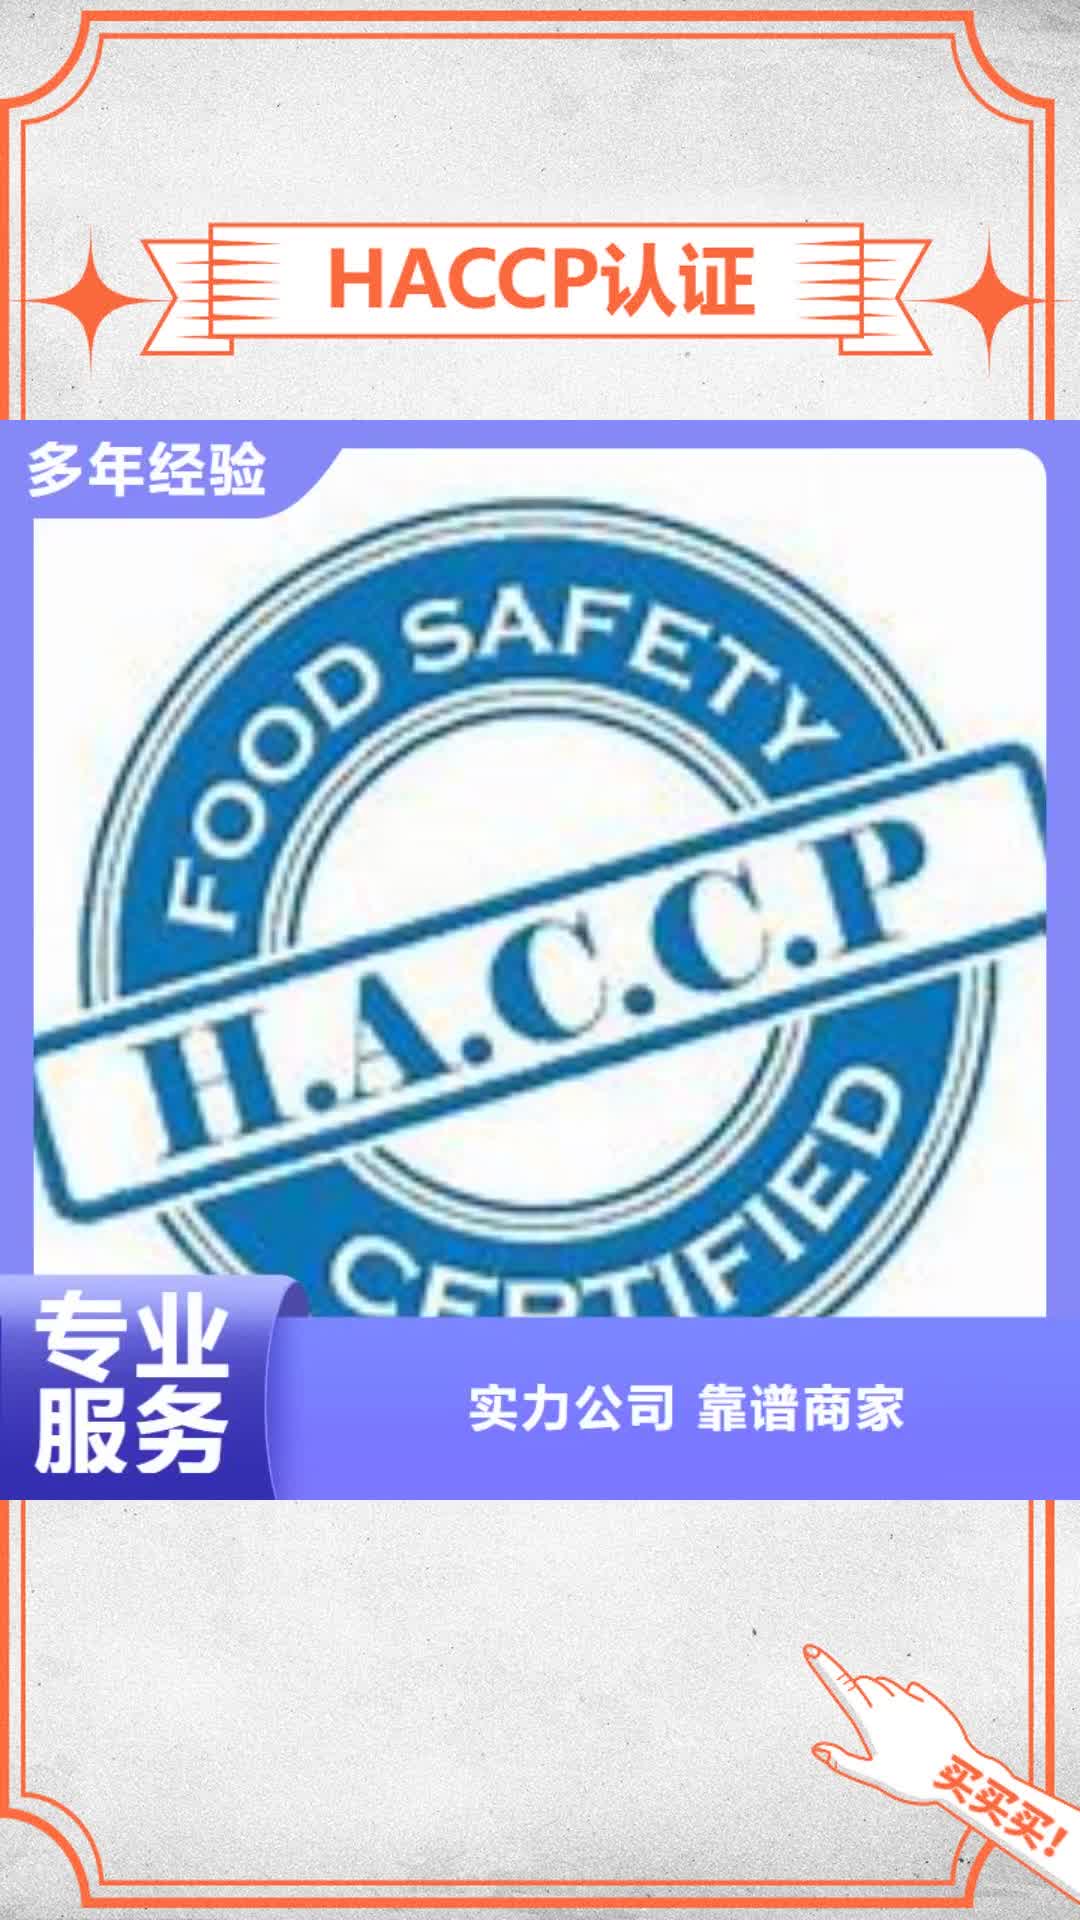 【澳门 HACCP认证信誉保证】